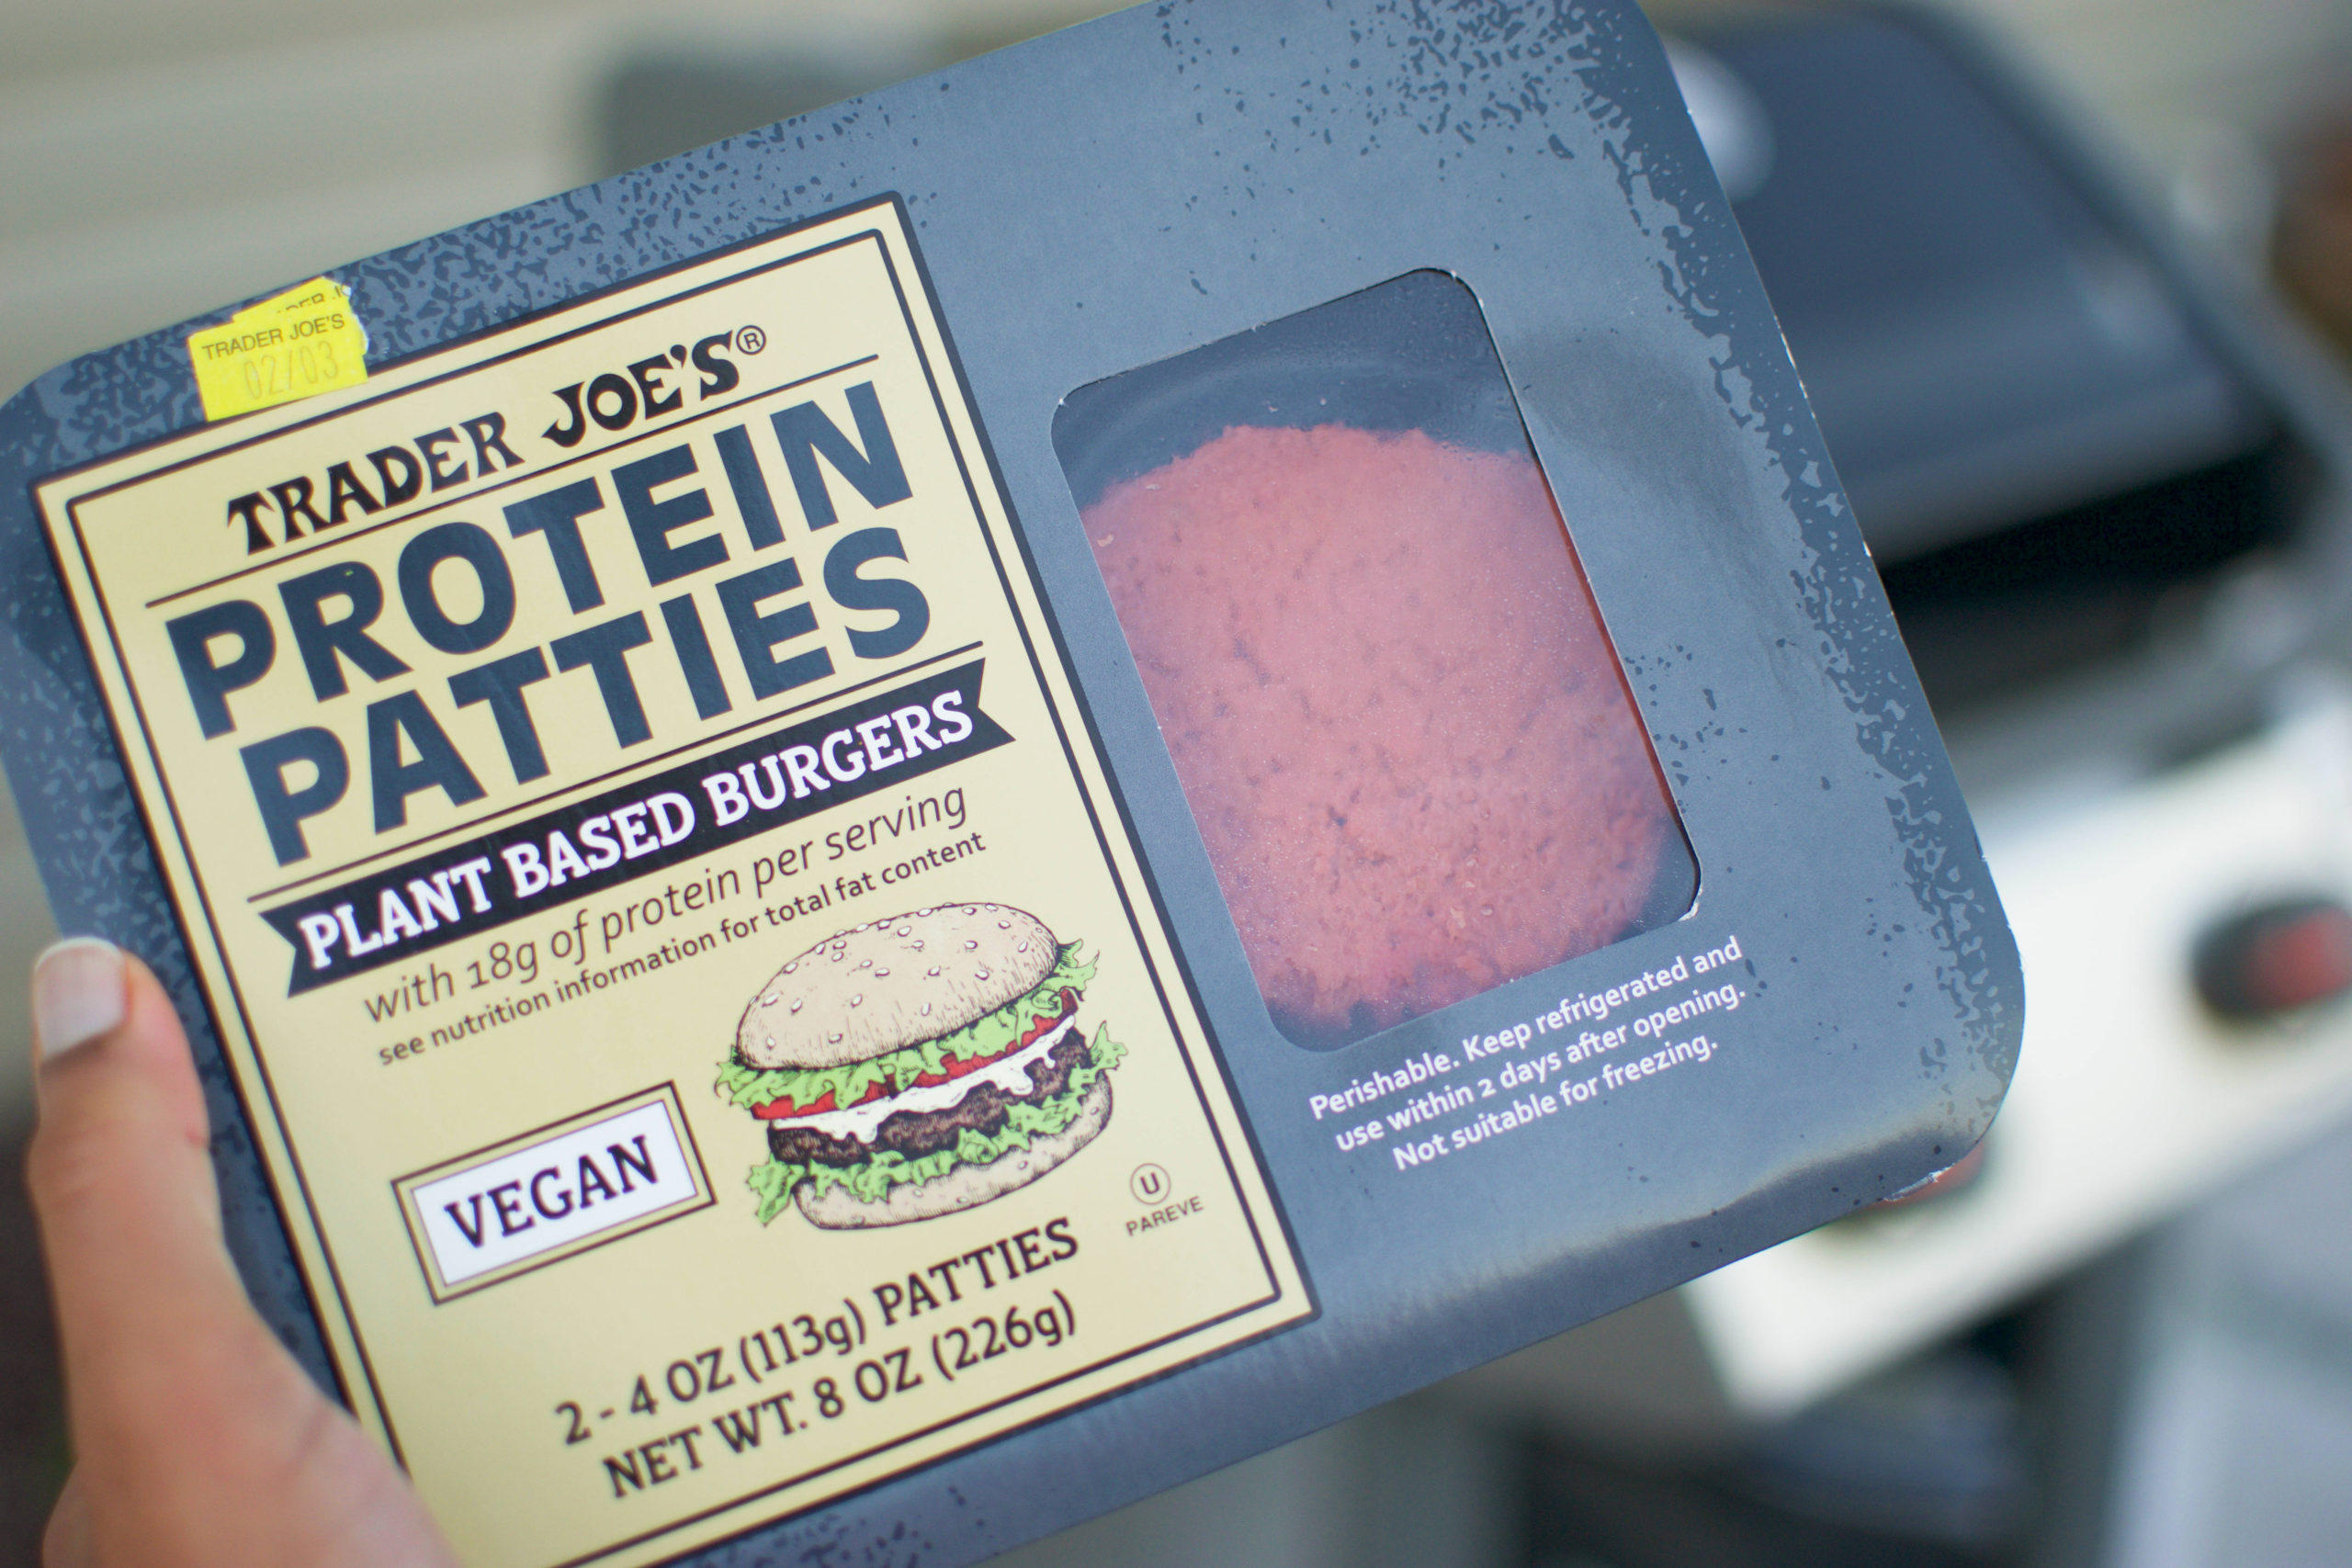 Trader Joe's Protein Patties Burger Package